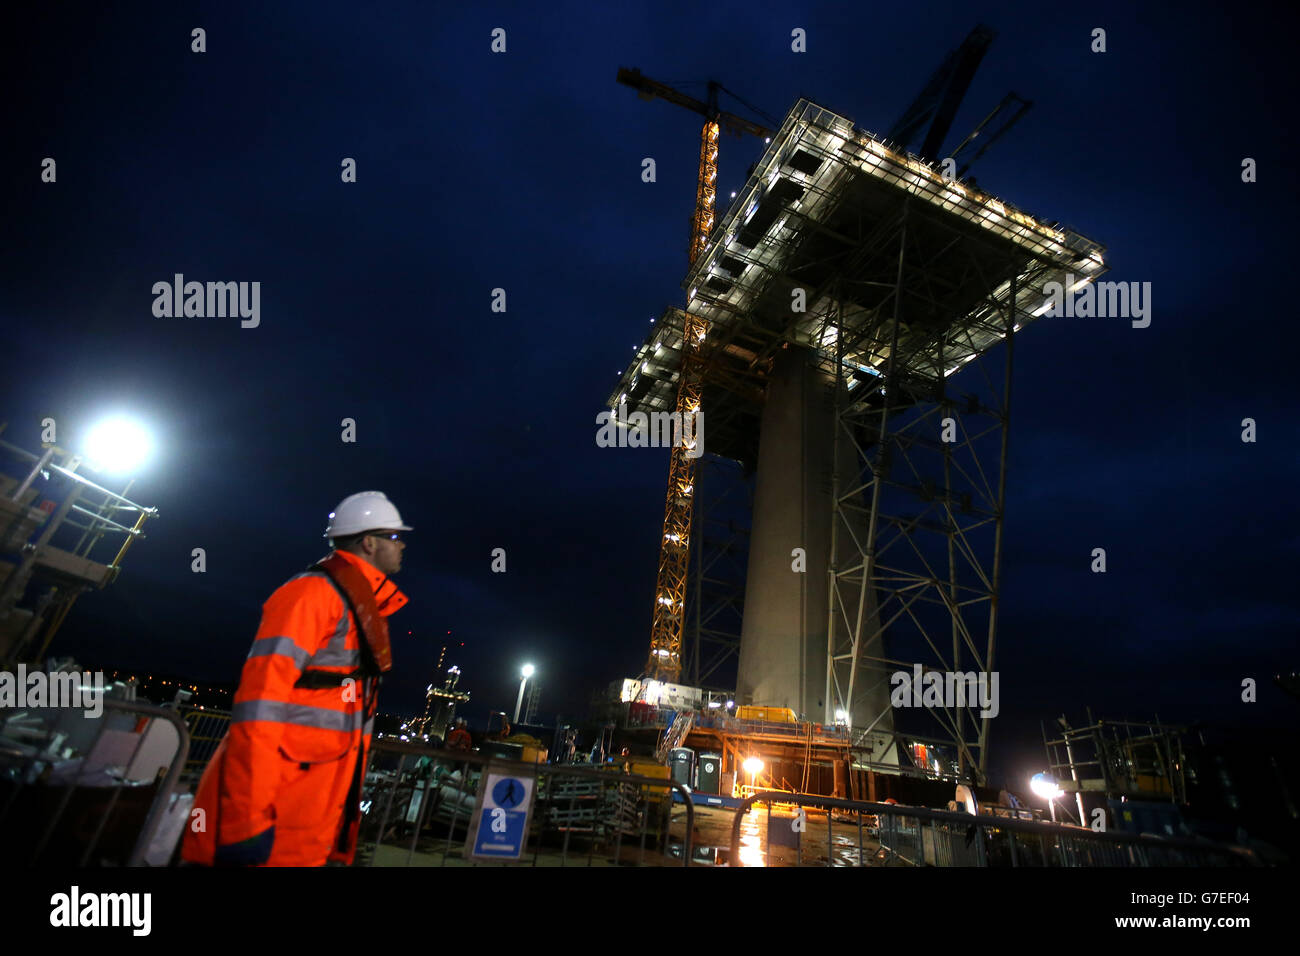 Les travaux se poursuivent tout au long de la nuit à la tour centrale sur Beamer Rock dans le Forth, en Écosse, sur le Queensferry Crossing qui doit être achevé en 2016 et atteindra 207 mètres de hauteur. Banque D'Images